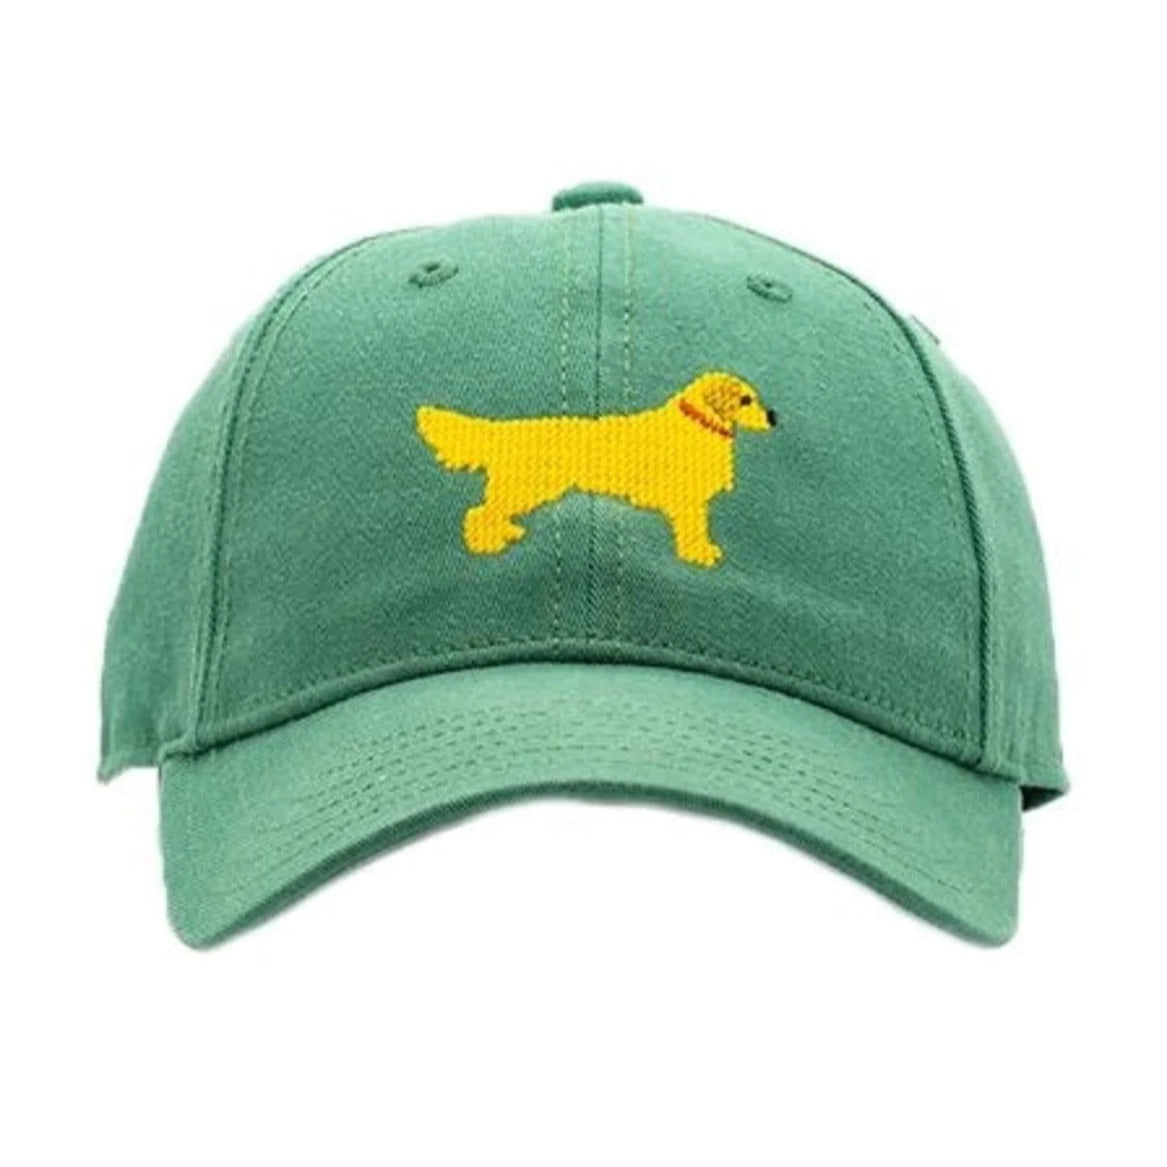 HL Hat - Golden Retriever on Moss Green